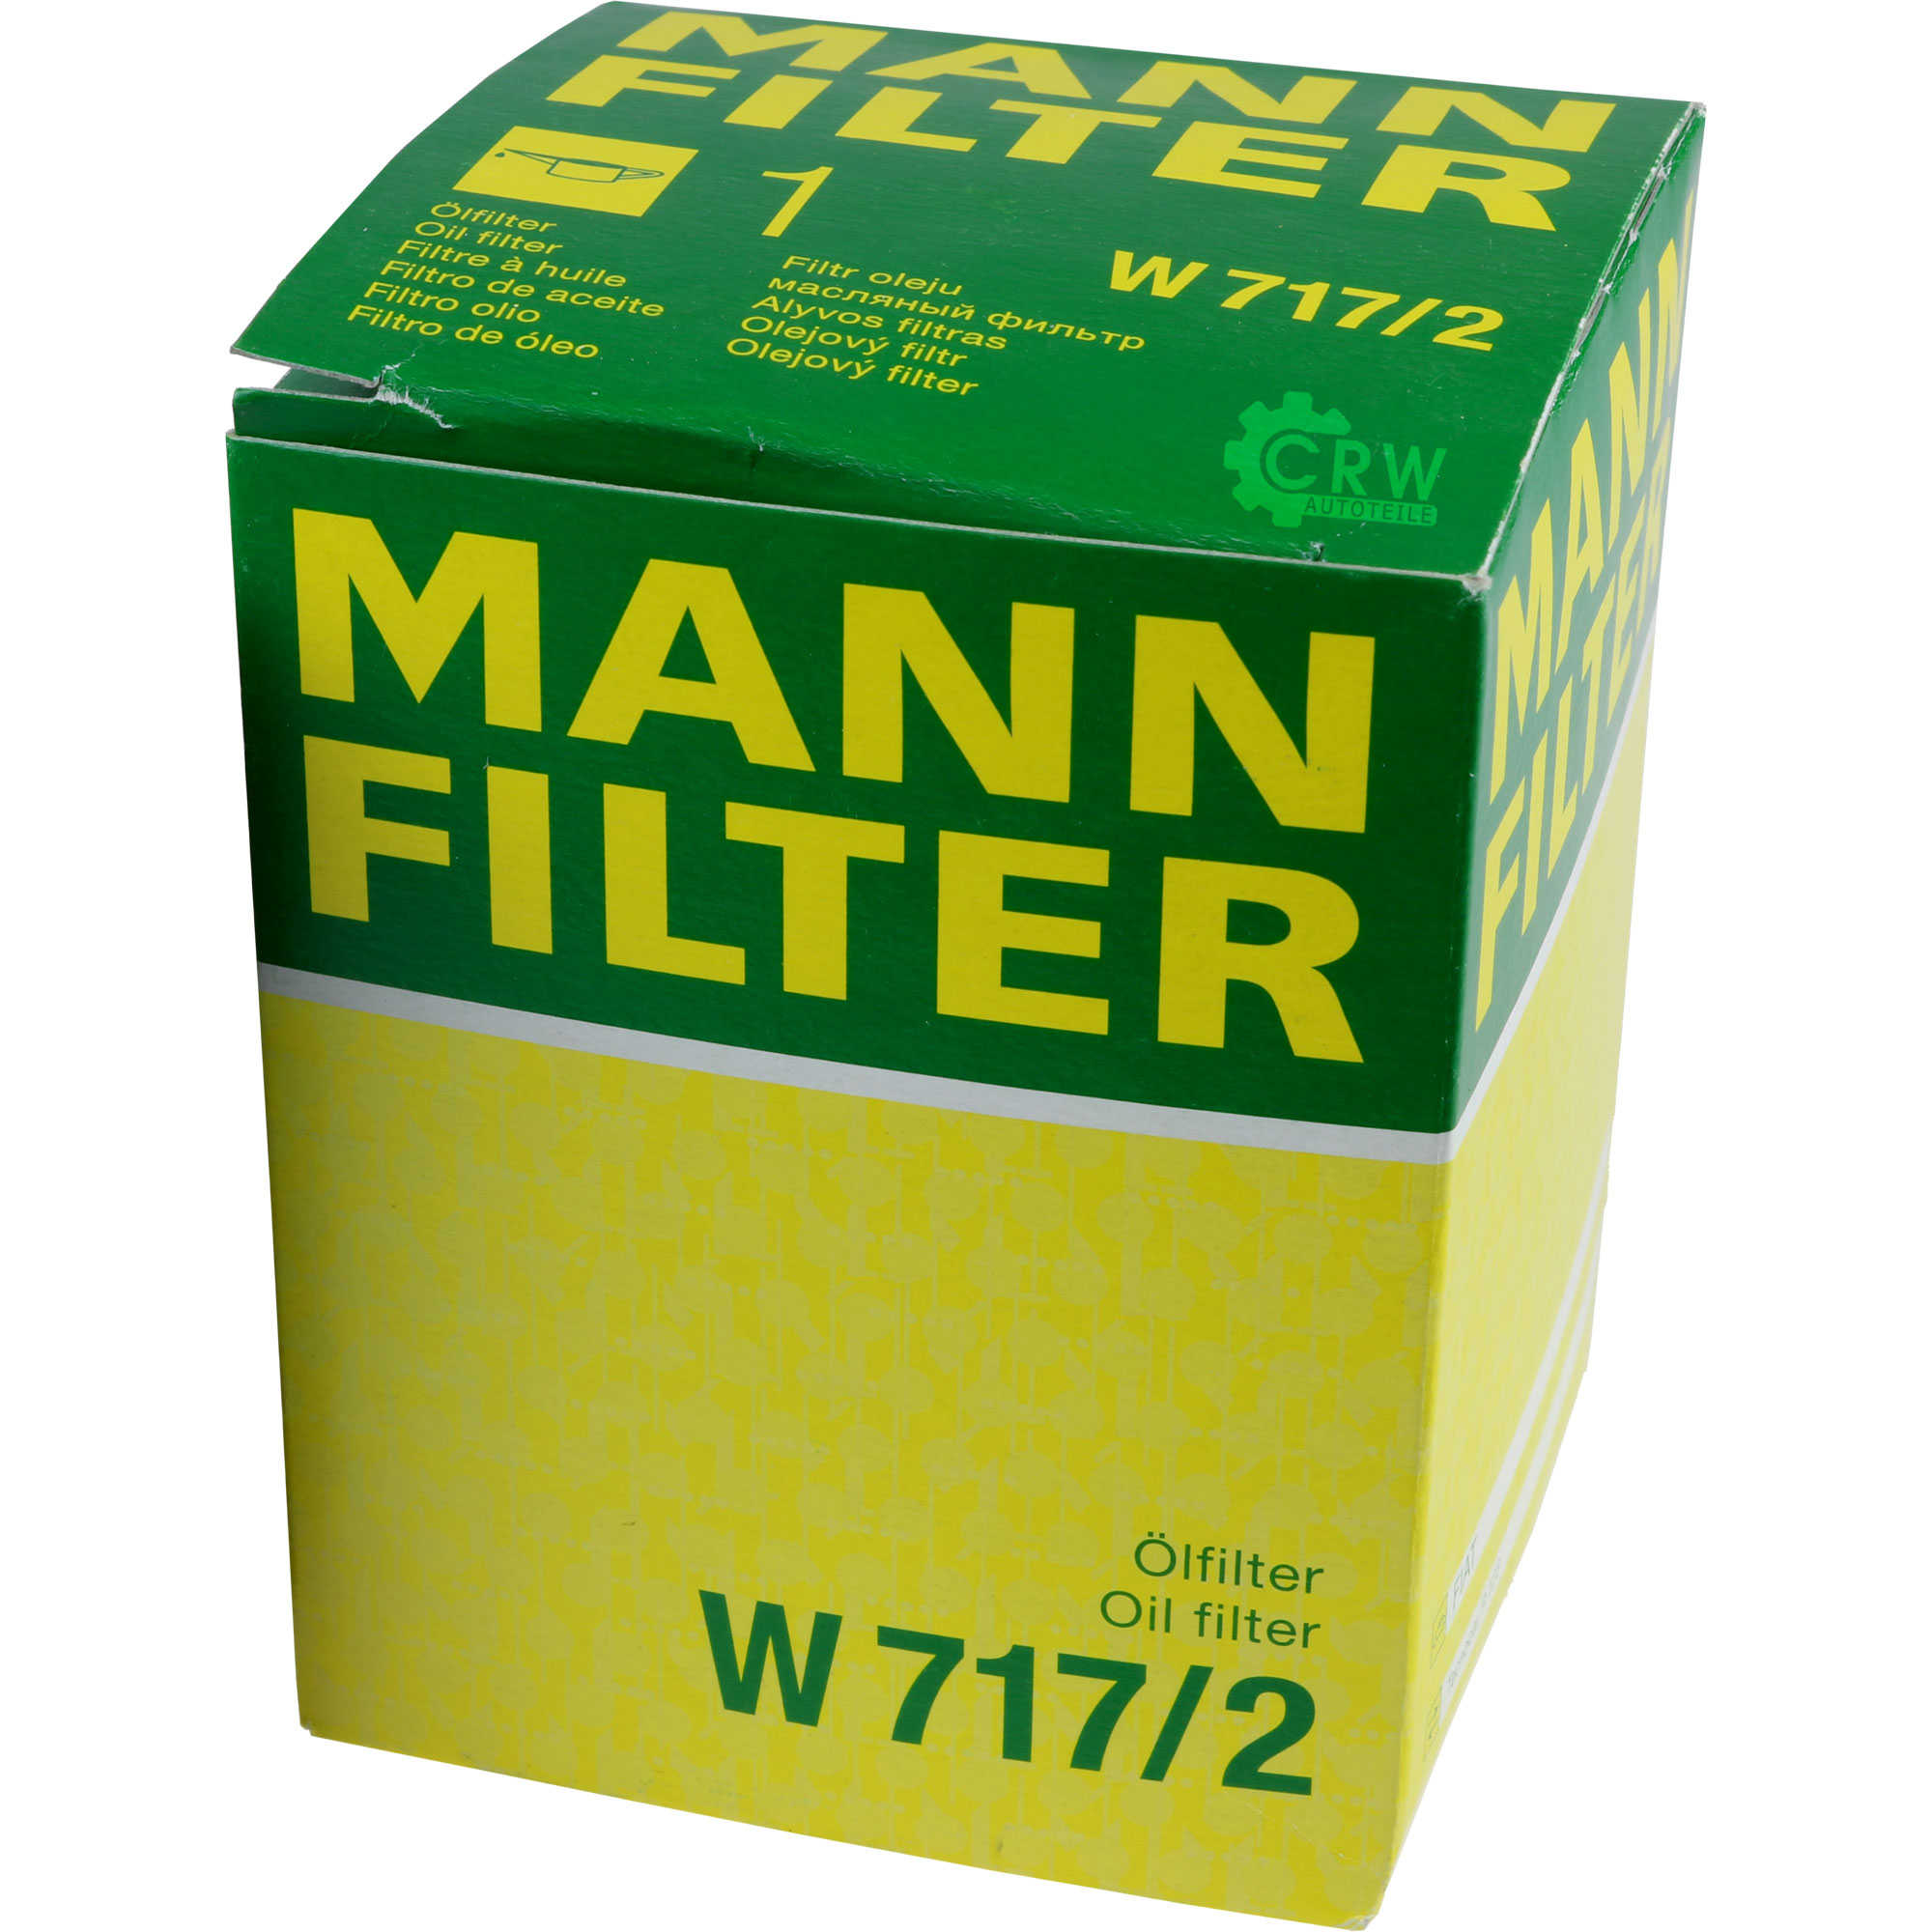 MANN-FILTER Ölfilter W 717/2 Oil Filter